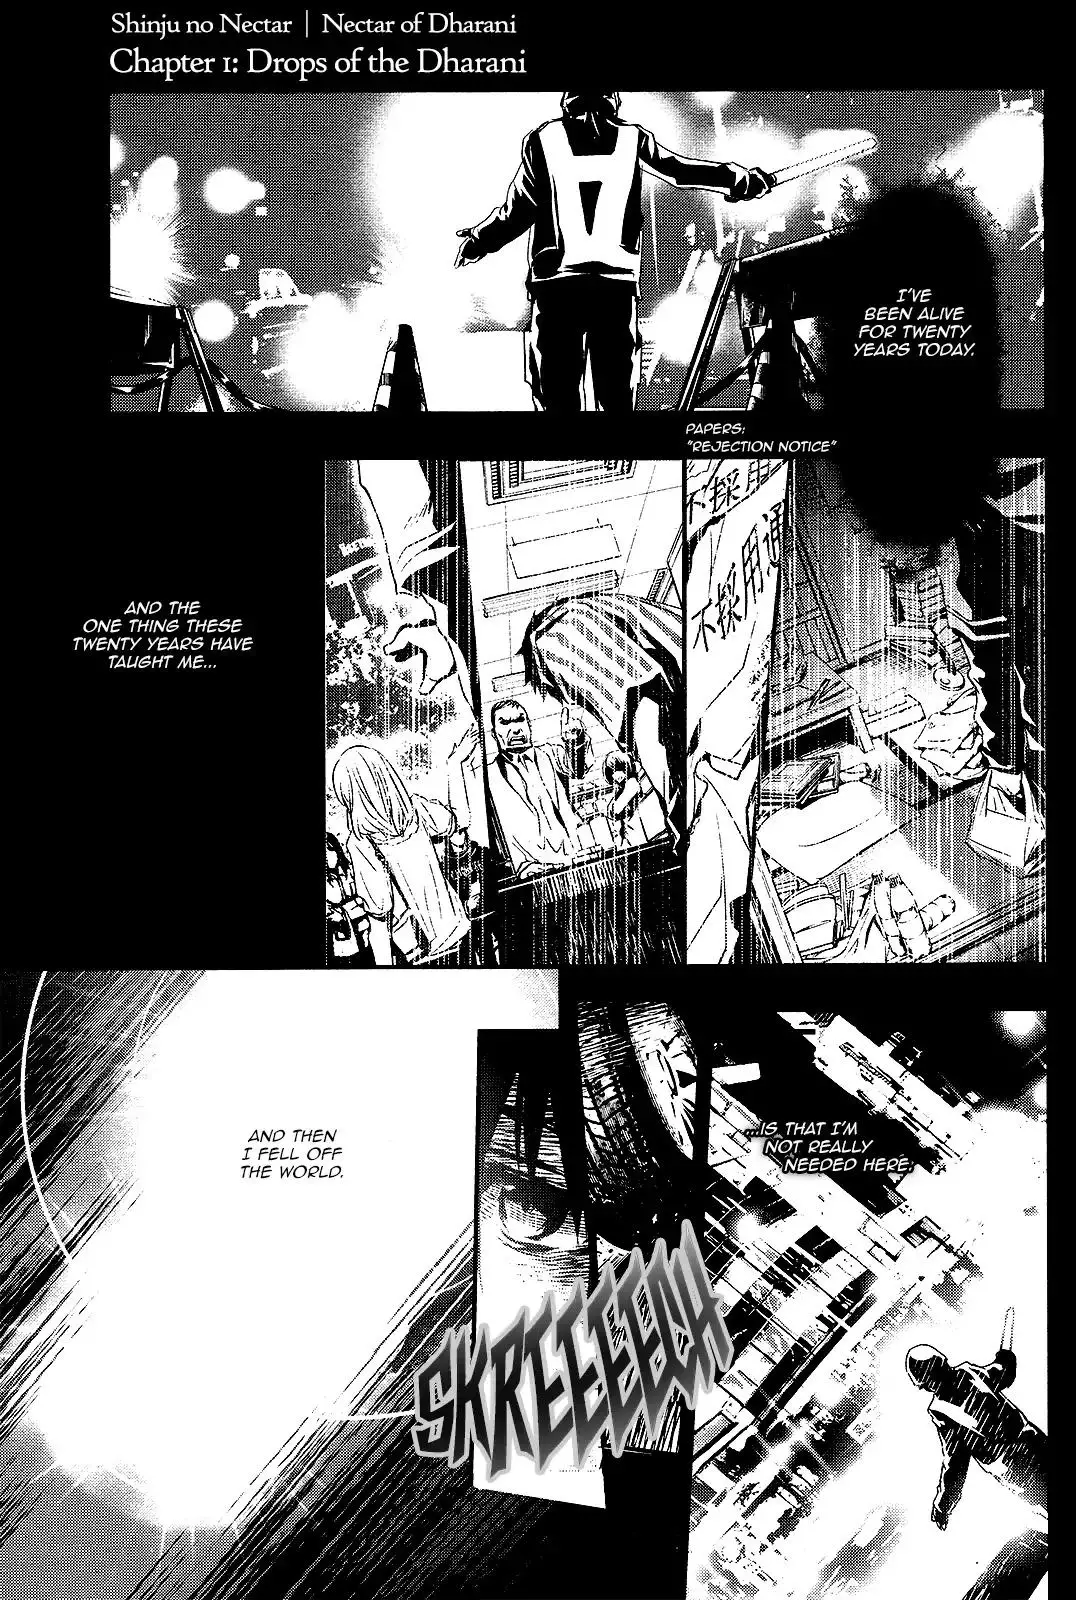 Shinju no Nectar - 1 page 1